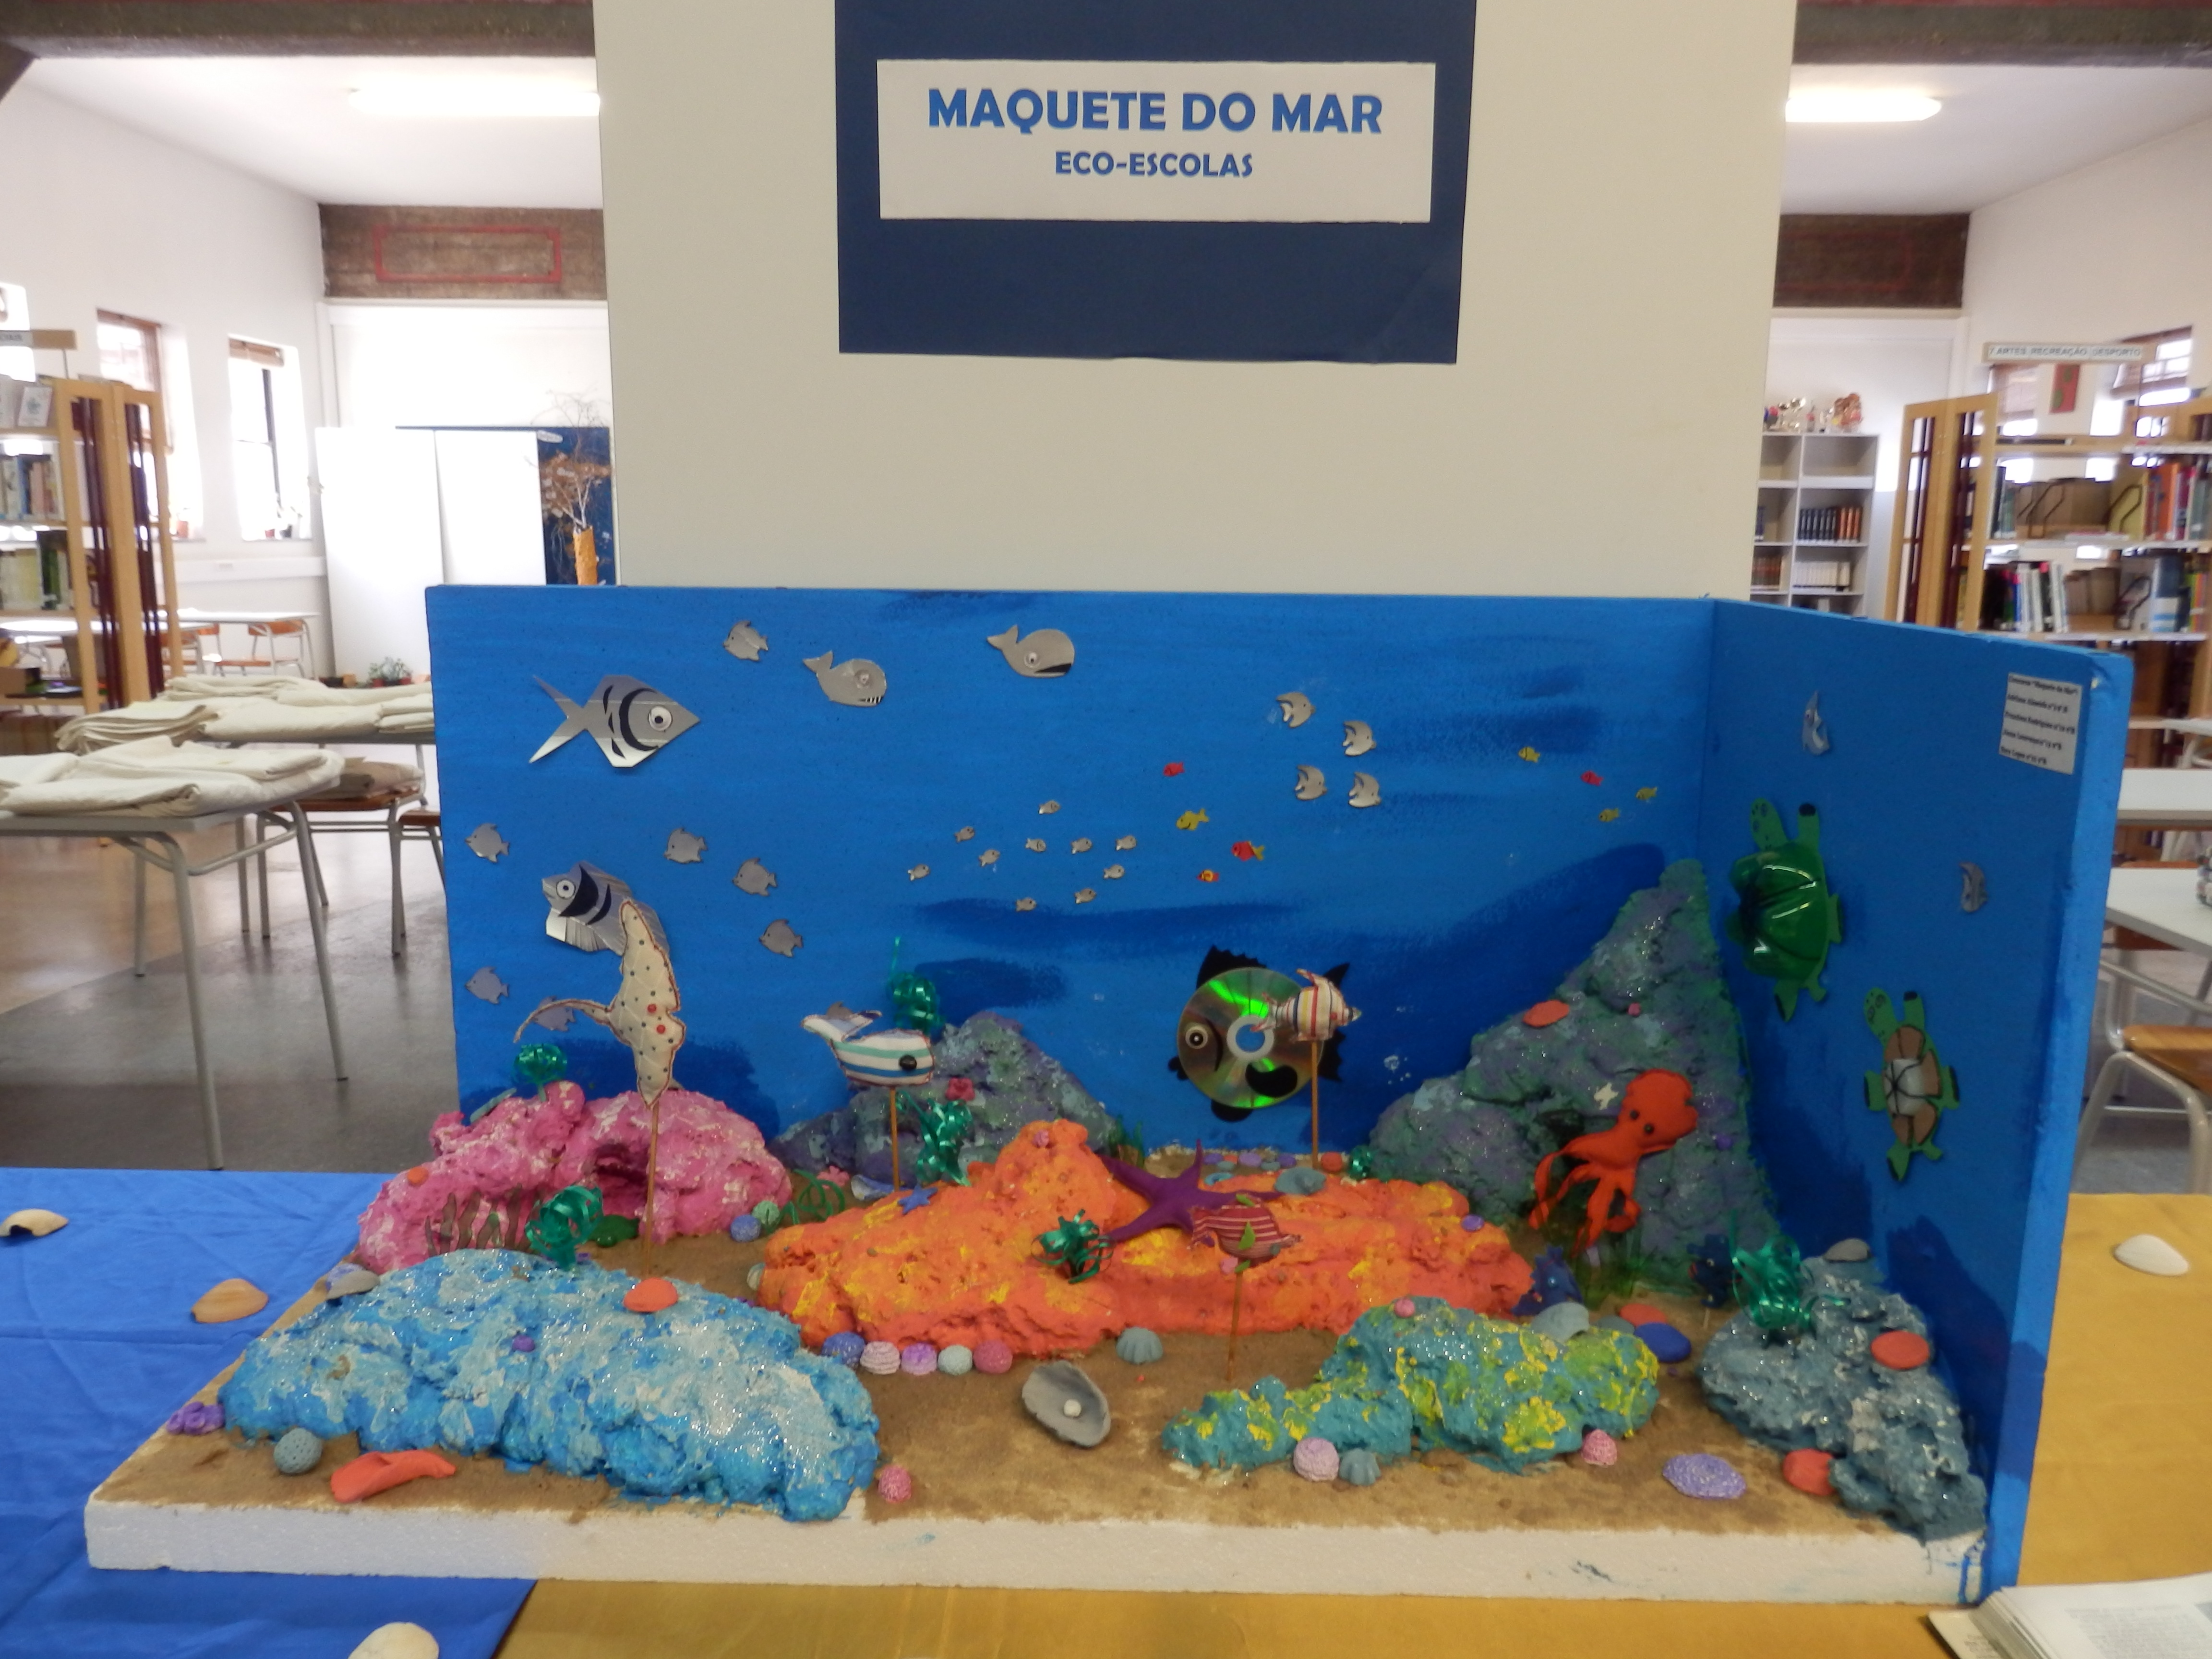 Maquete representando um ecossistema marinho